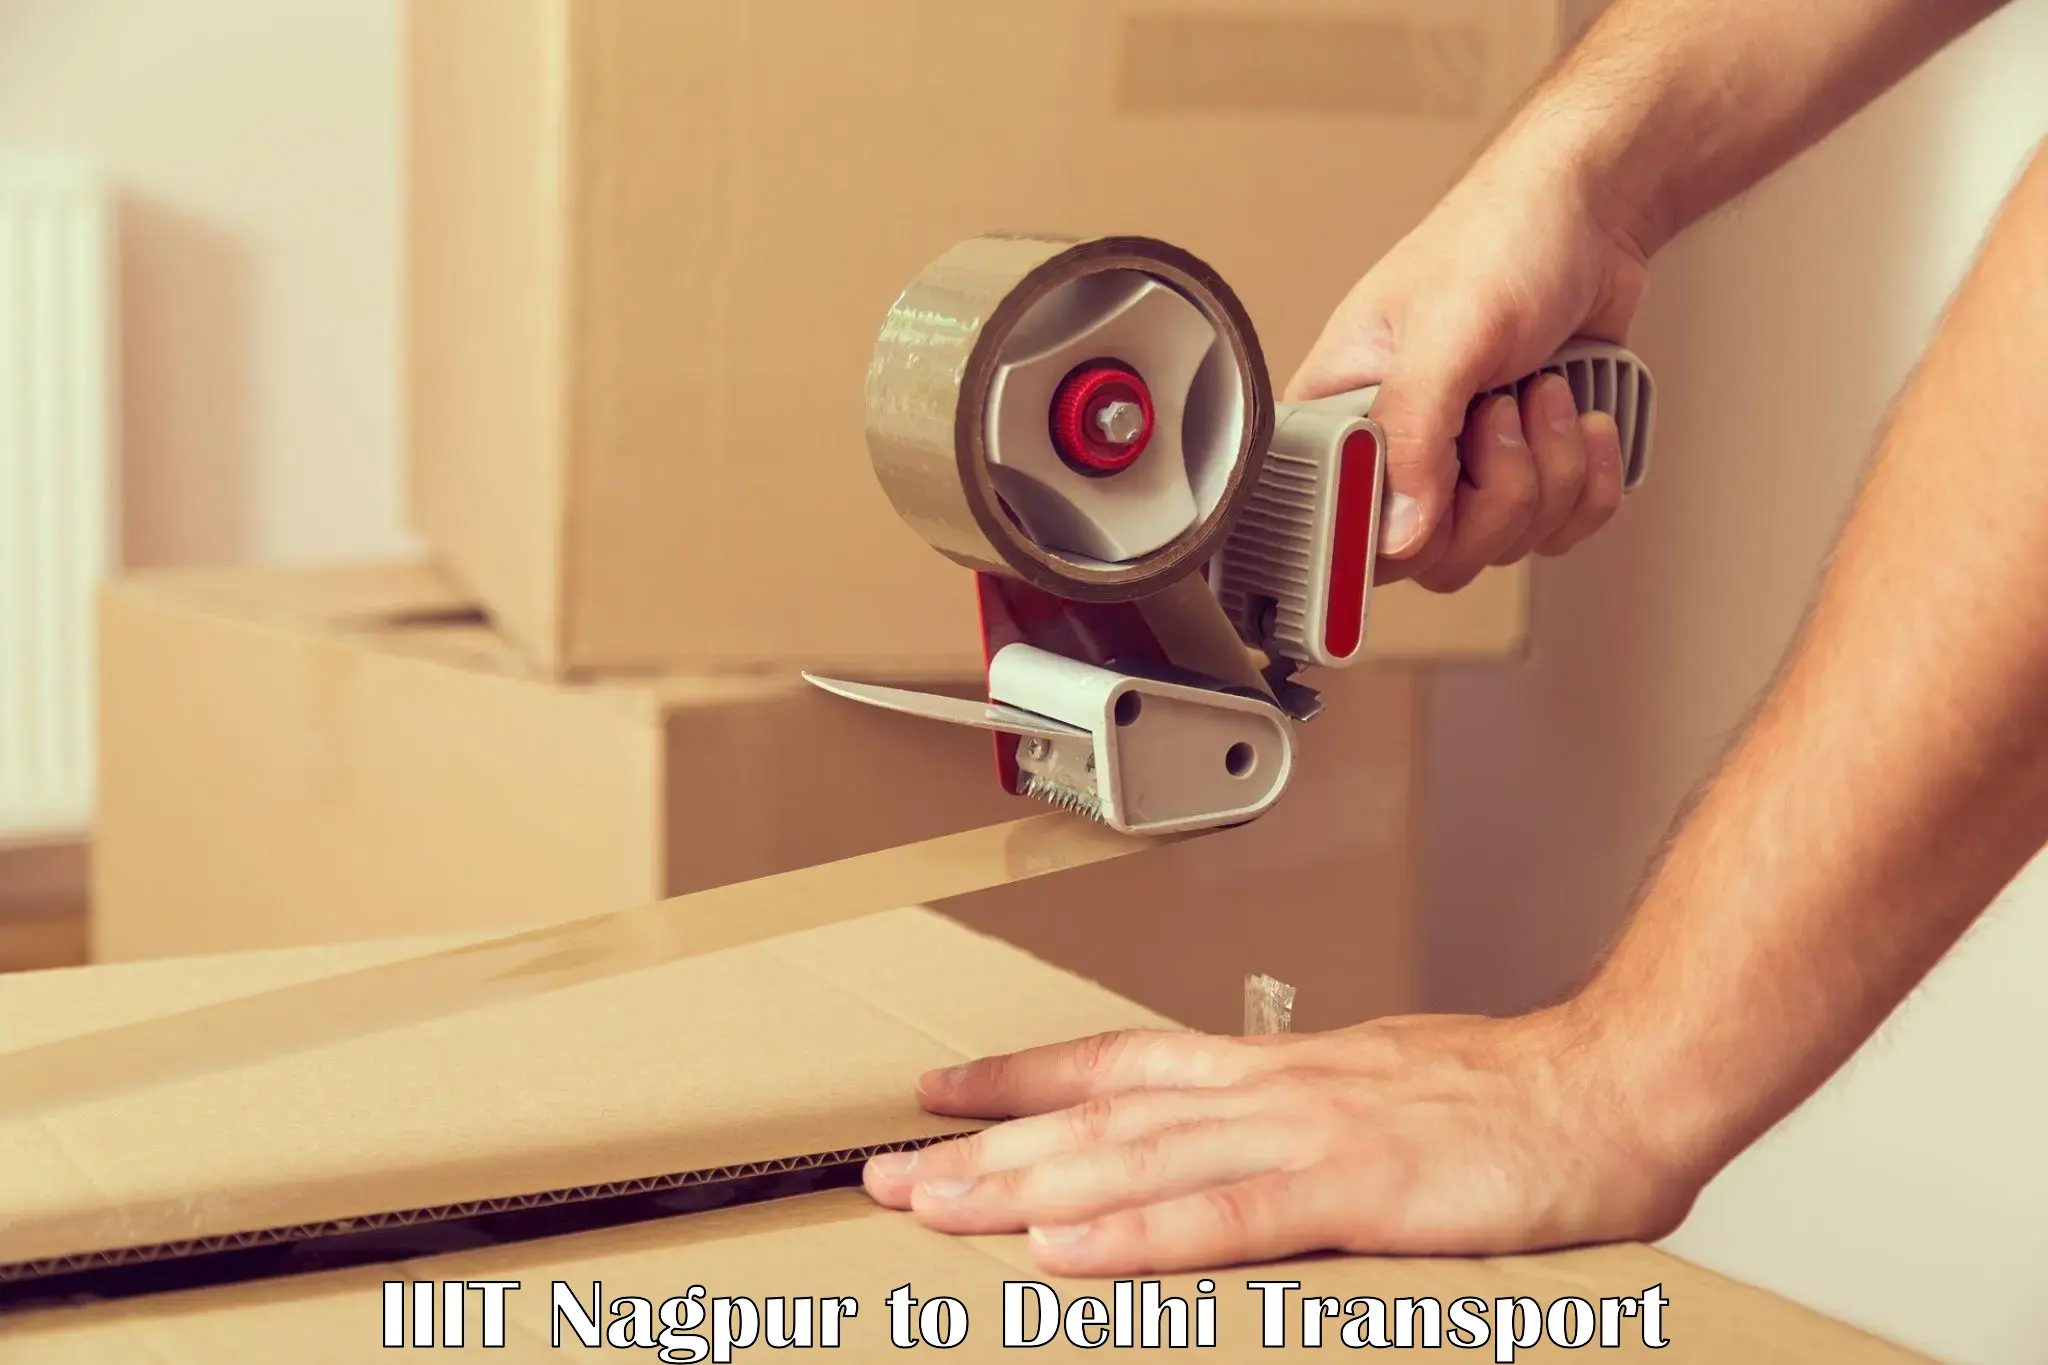 Goods delivery service IIIT Nagpur to IIT Delhi